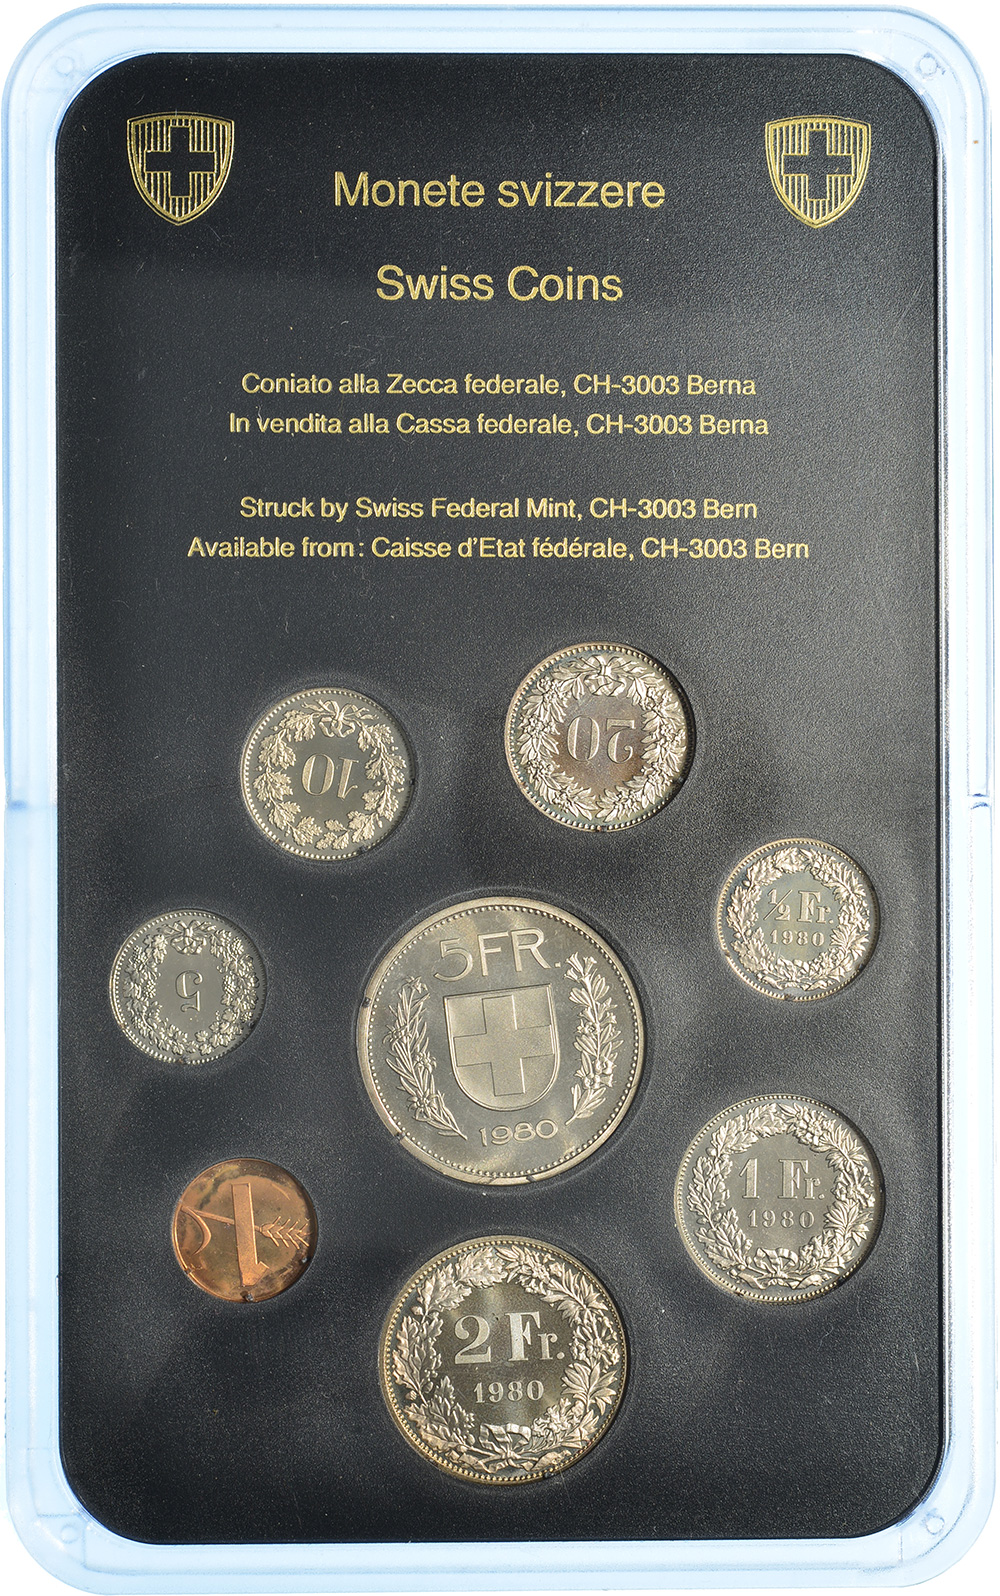 Münzensatz, 1980, Stempelglanz, Kupfer/Nickel